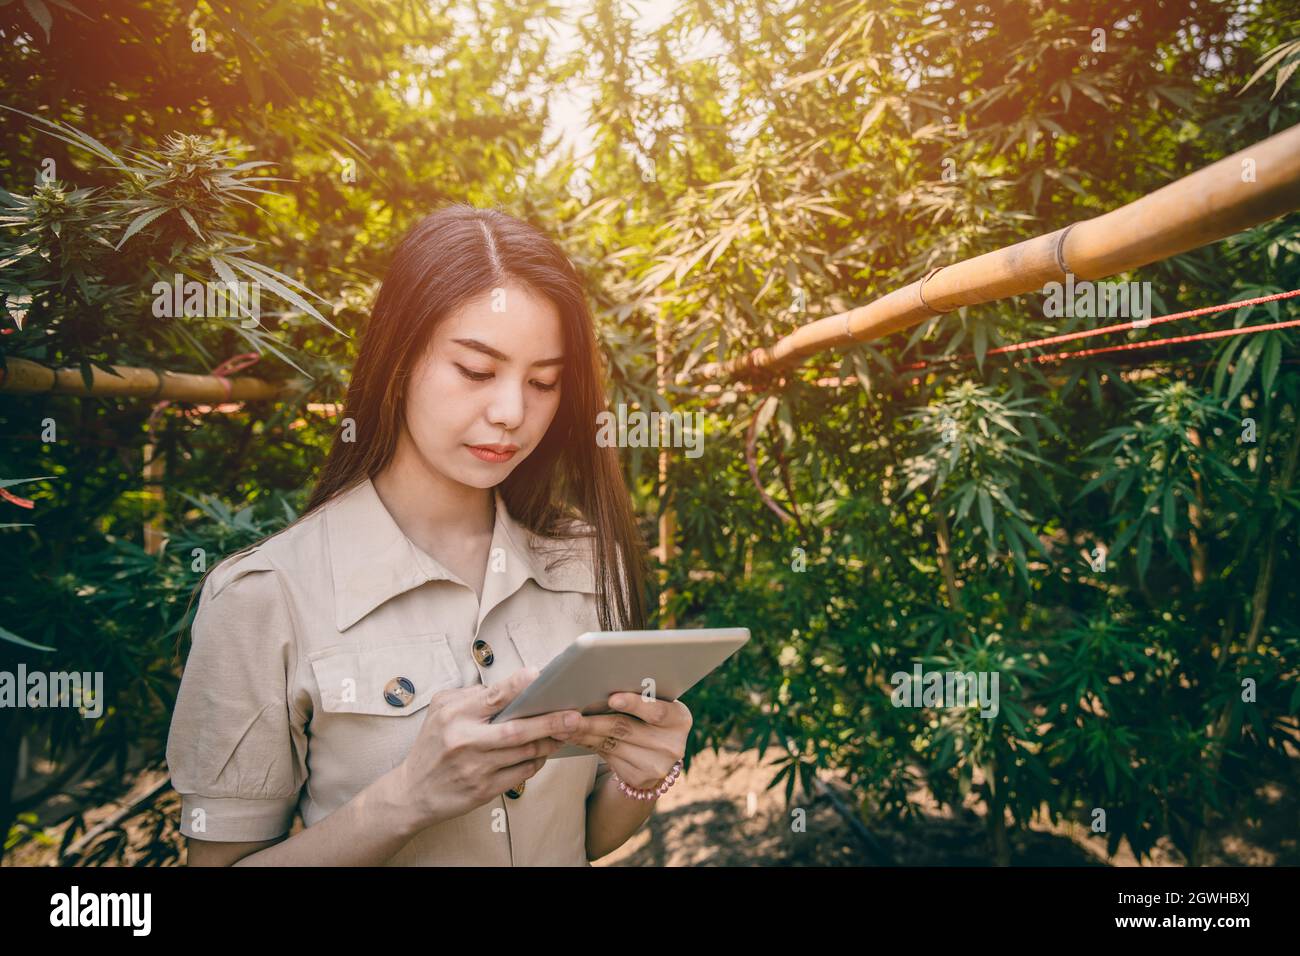 Intelligente junge Frau Cannabisfarmerin verwendet moderne Tablet-Technologie zur Überwachung der Marihuana- oder Hanfplantage. Stockfoto